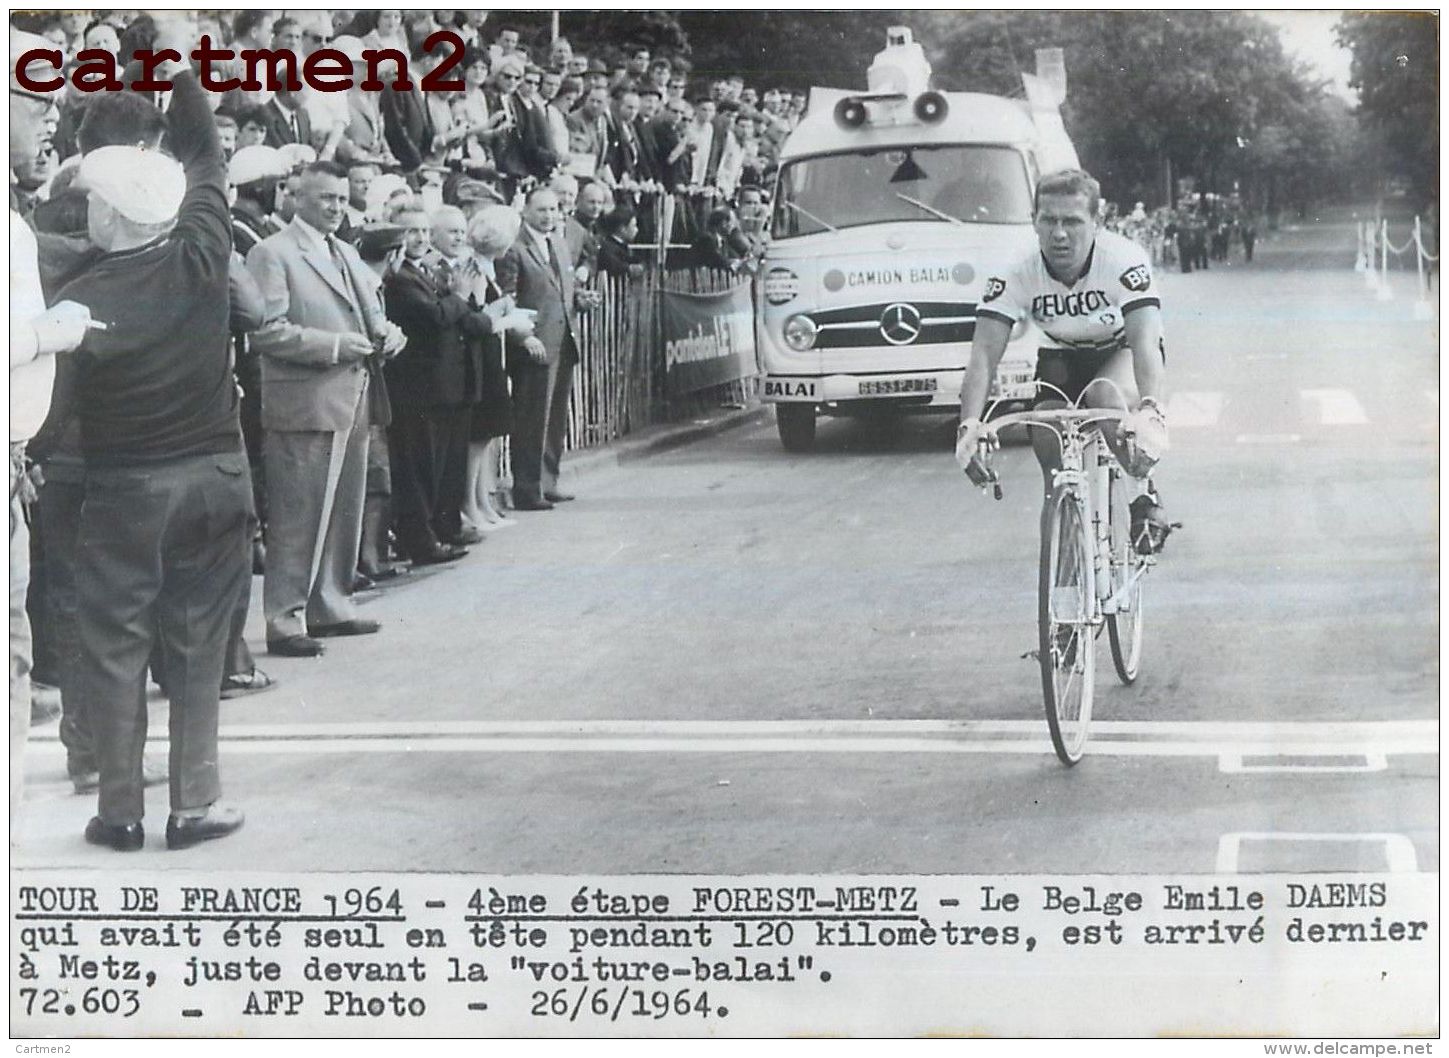 PHOTOGRAPHIE ANCIENNNE TOUR DE FRANCE 1964 FOREST-METZ BELGE EMILE DAEMS VOITURE BALAI MERCEDES CYCLISME SPORT CYCLISTE - Sports